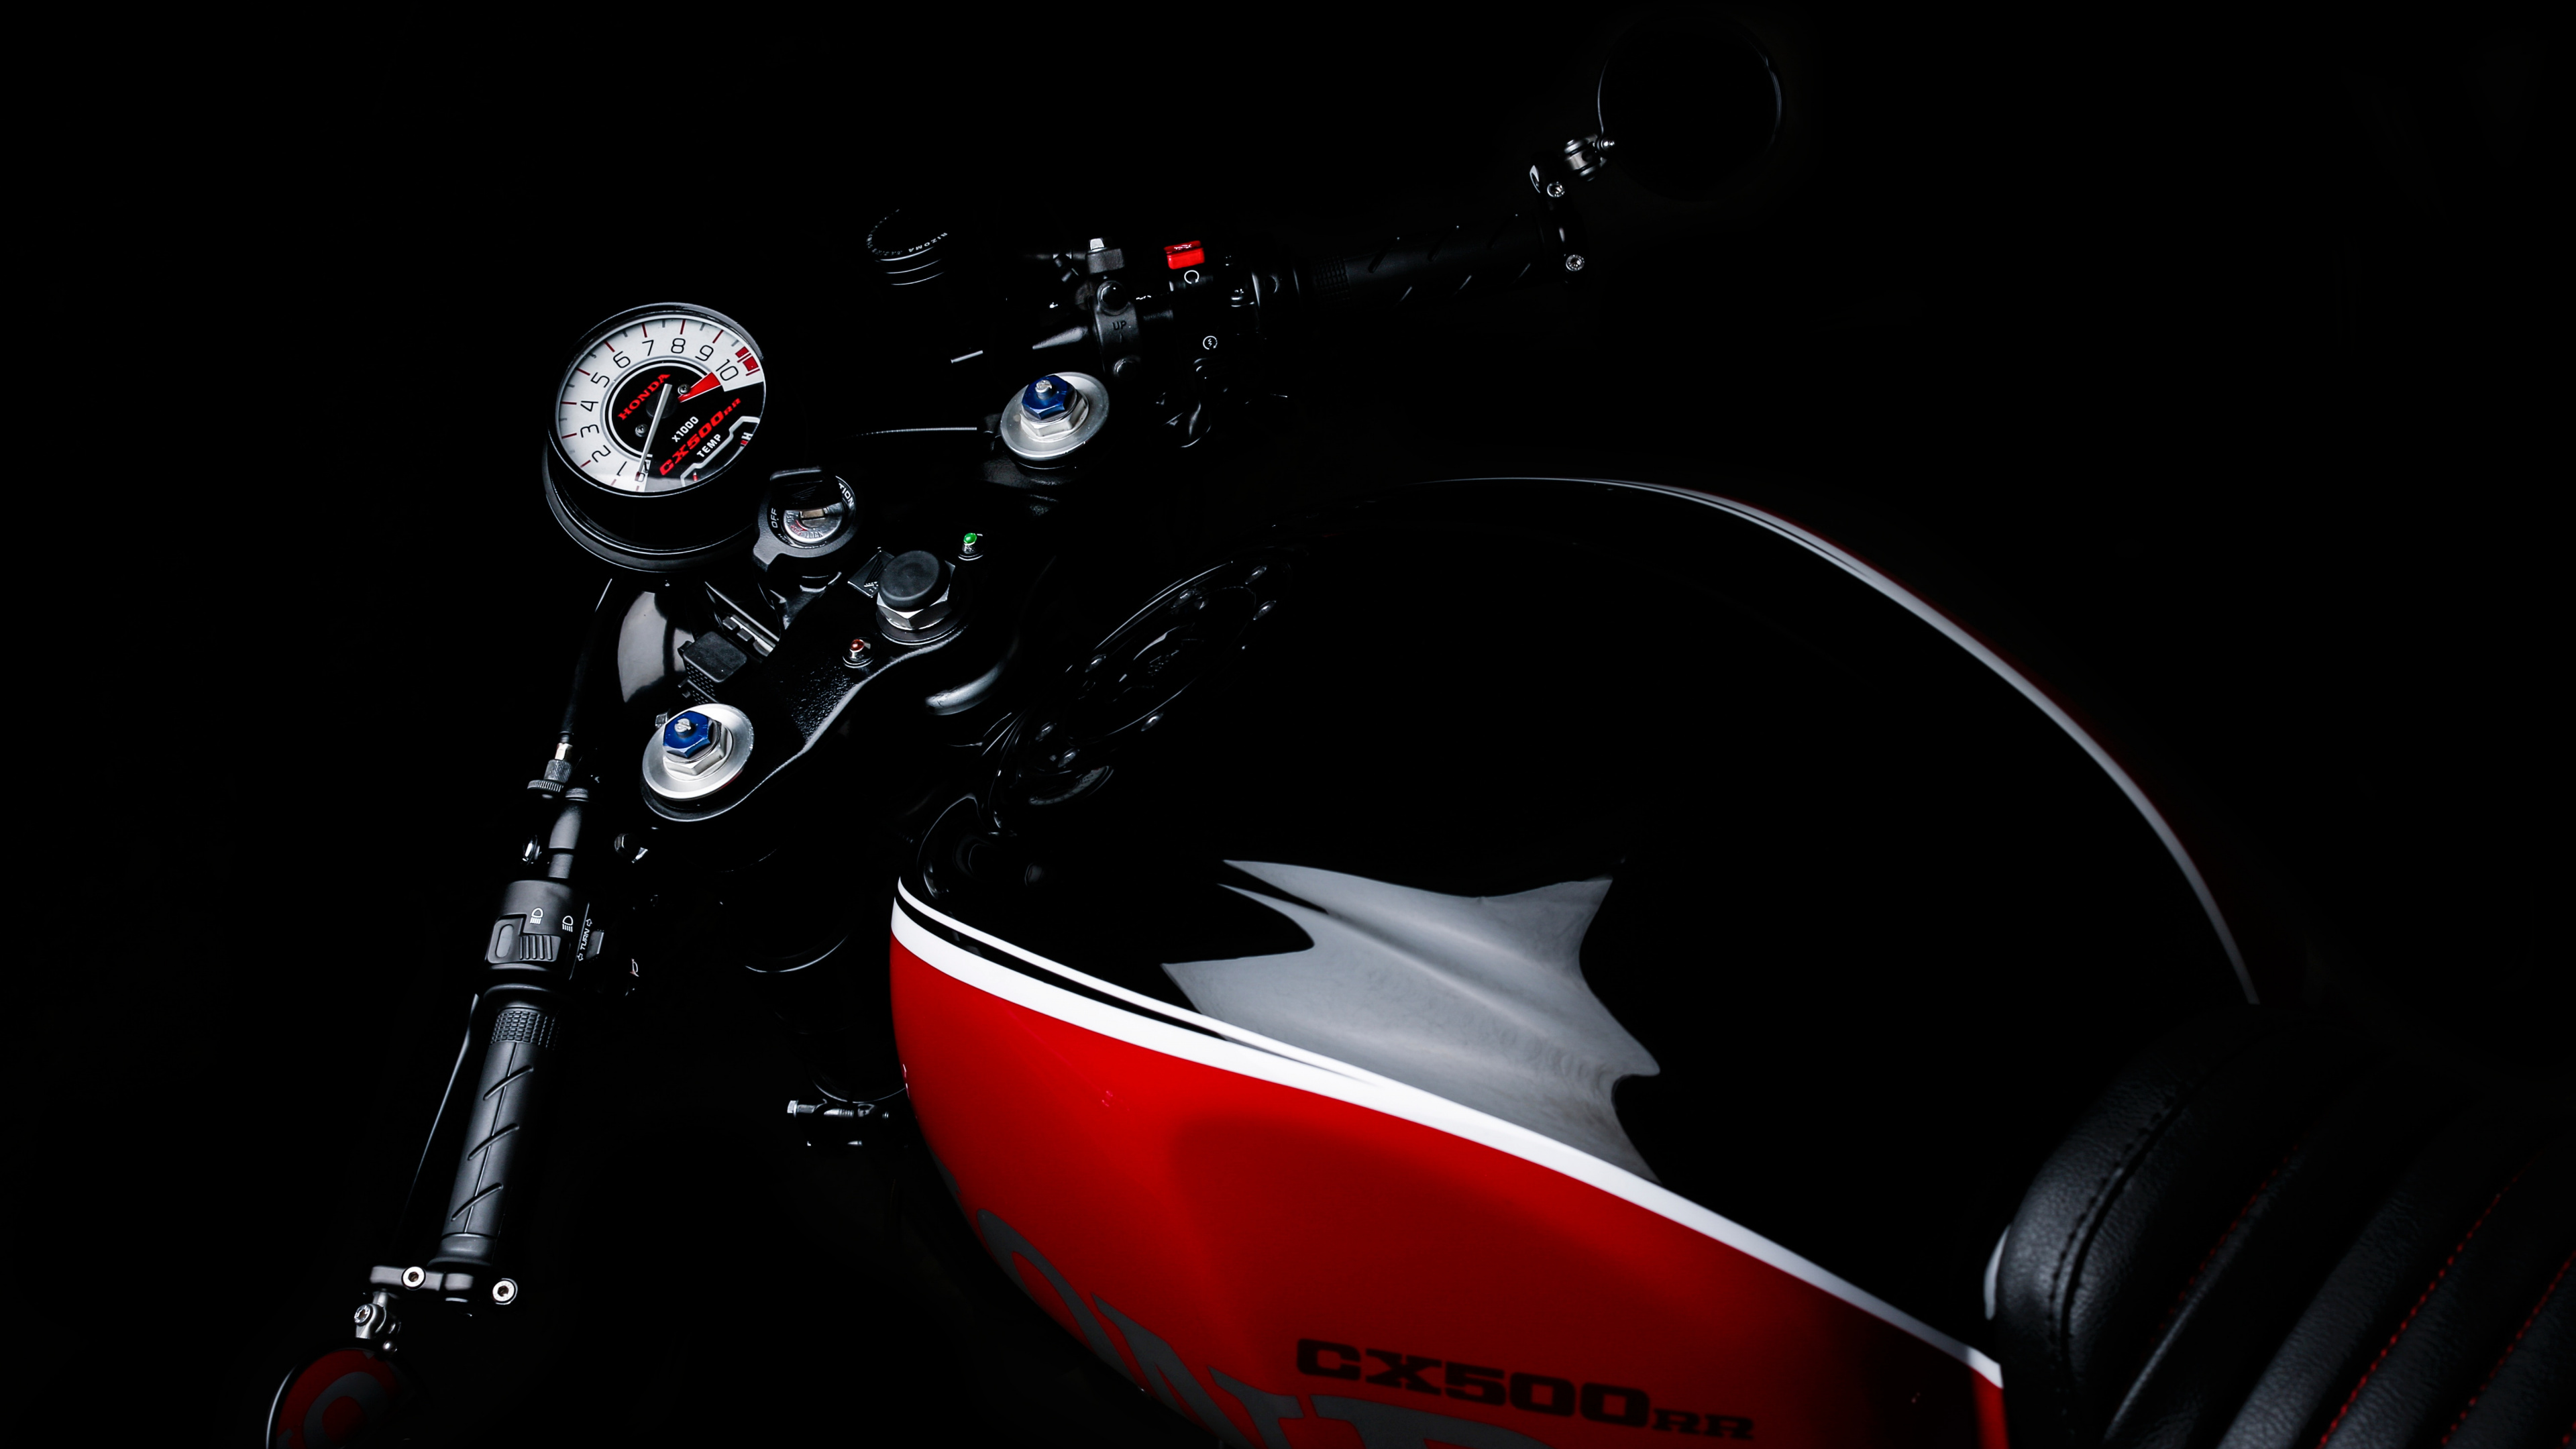 Motocicleta Honda Roja y Negra. Wallpaper in 3840x2160 Resolution